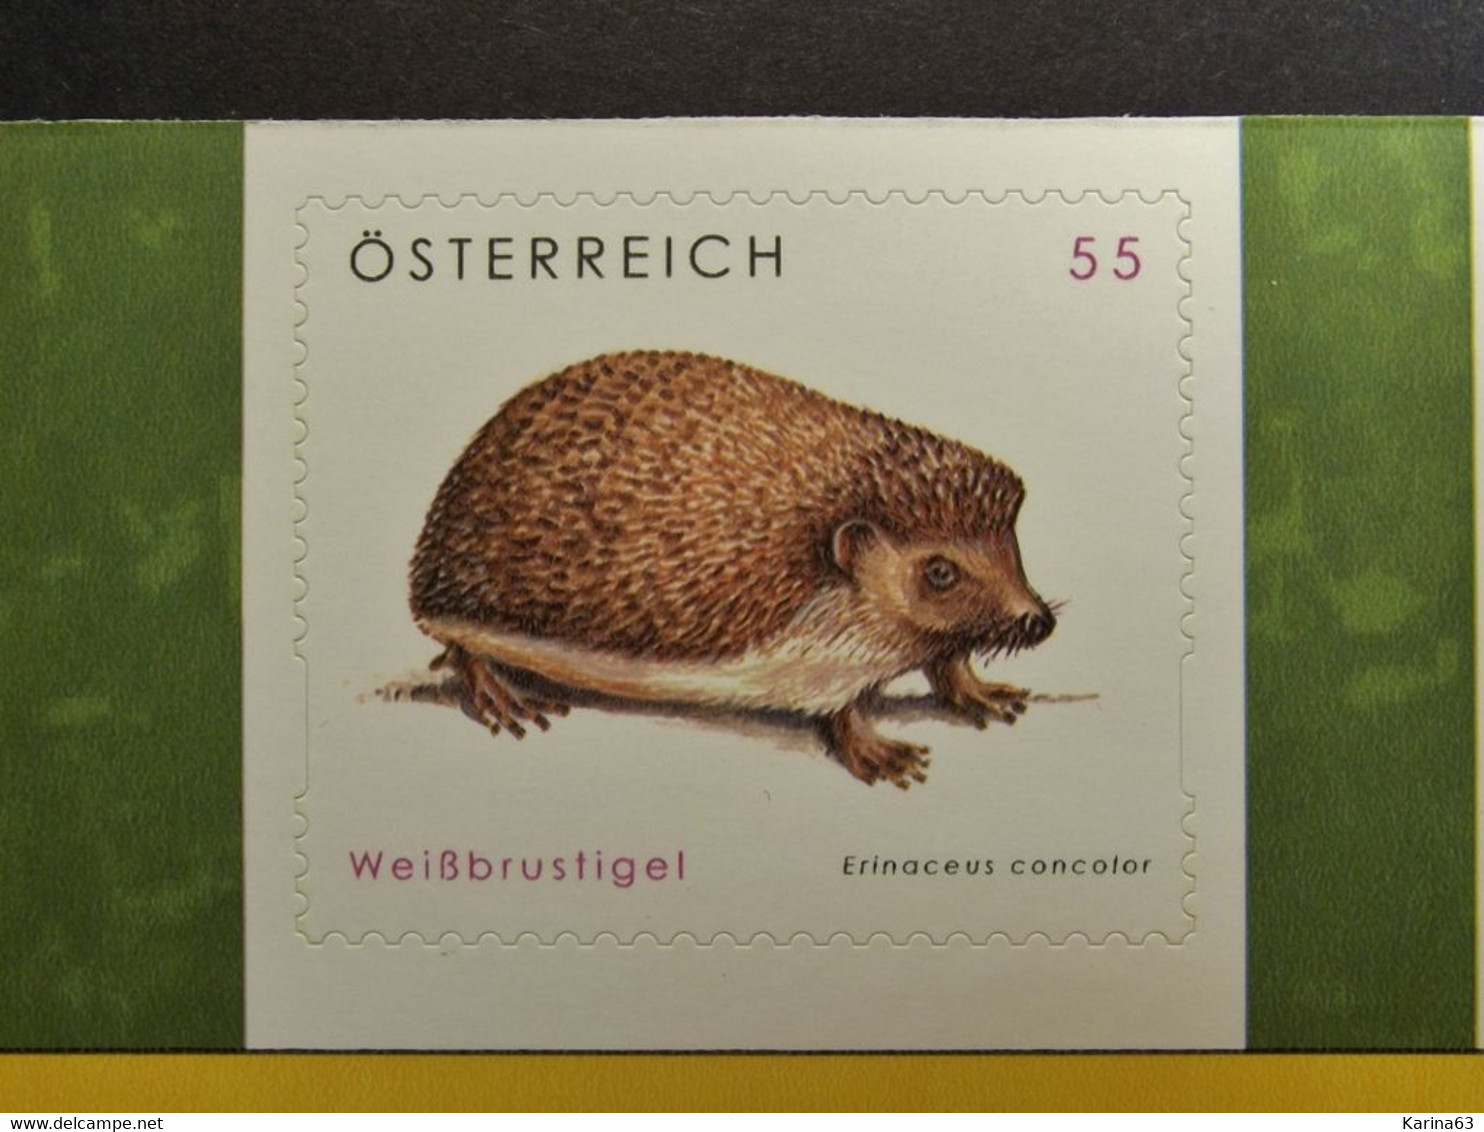 Österreich - Austriche - Austria - 2008 - 2729/30 - Postfrisch - MNH -  Tierschutz - Weißbrustigel  &  Feldhase - Ongebruikt